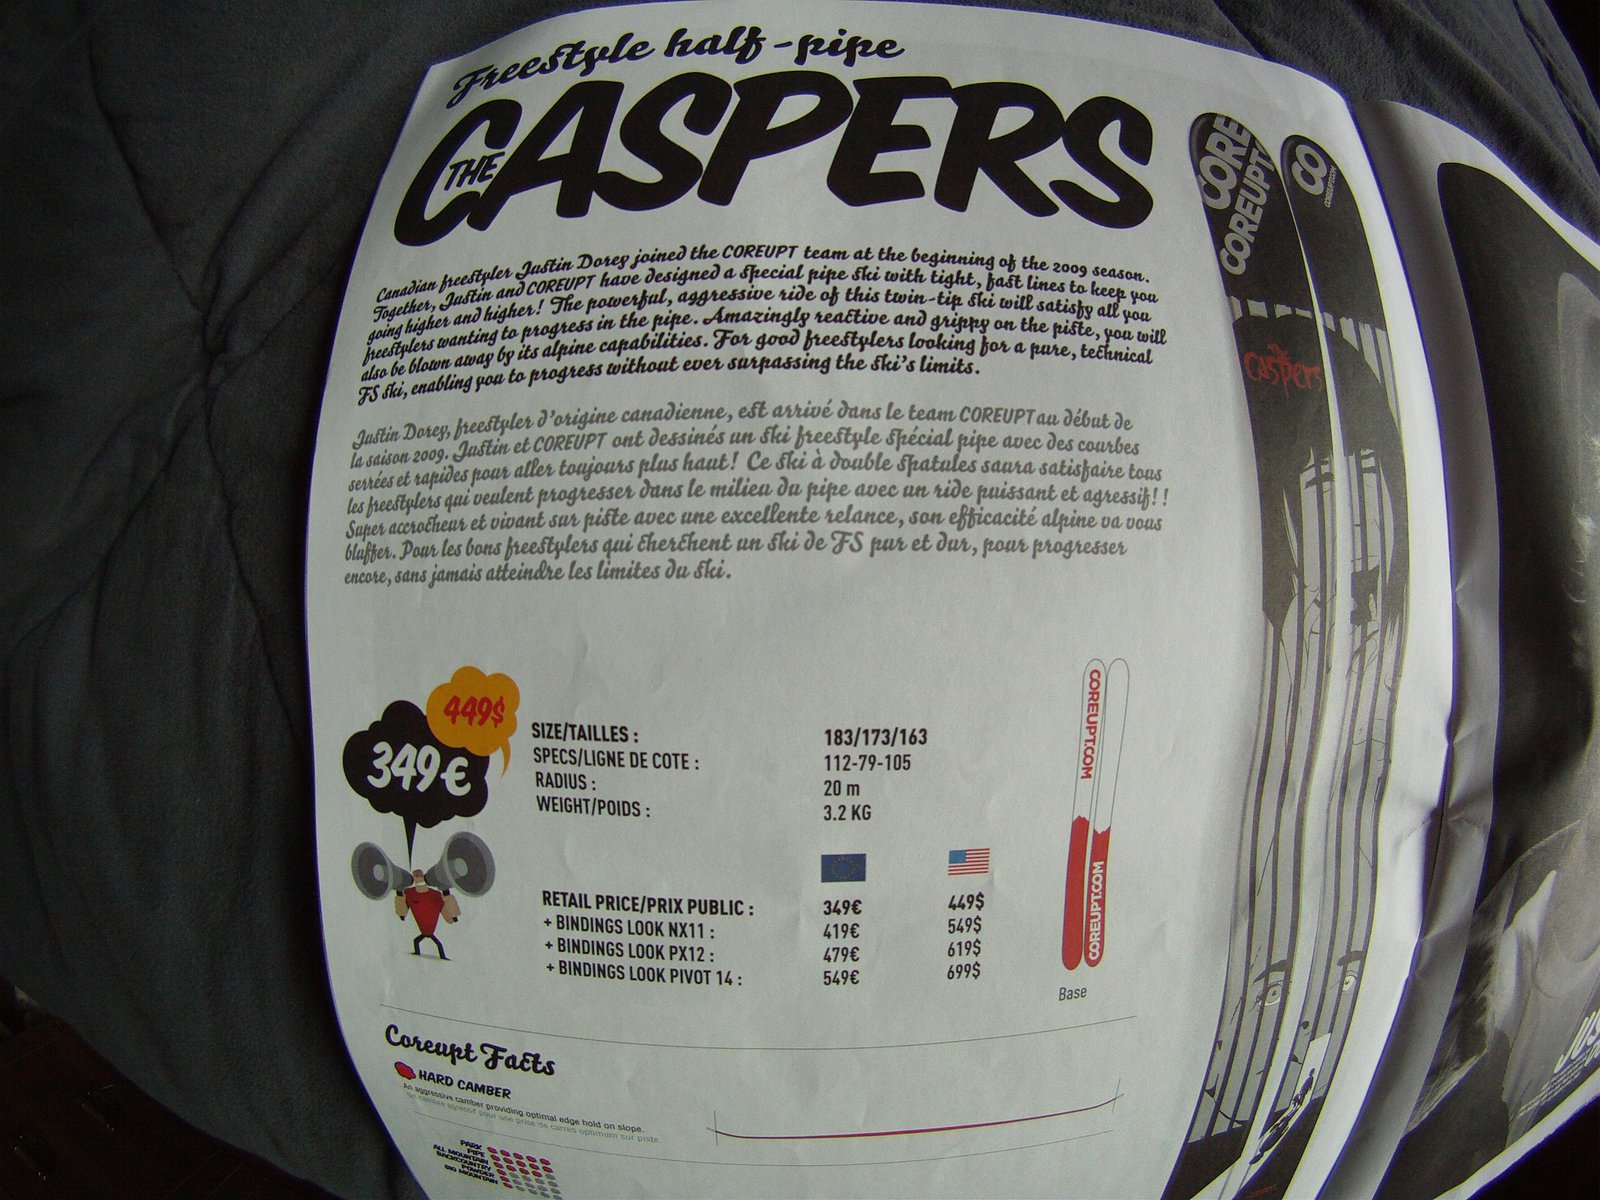 Coreupt caspers